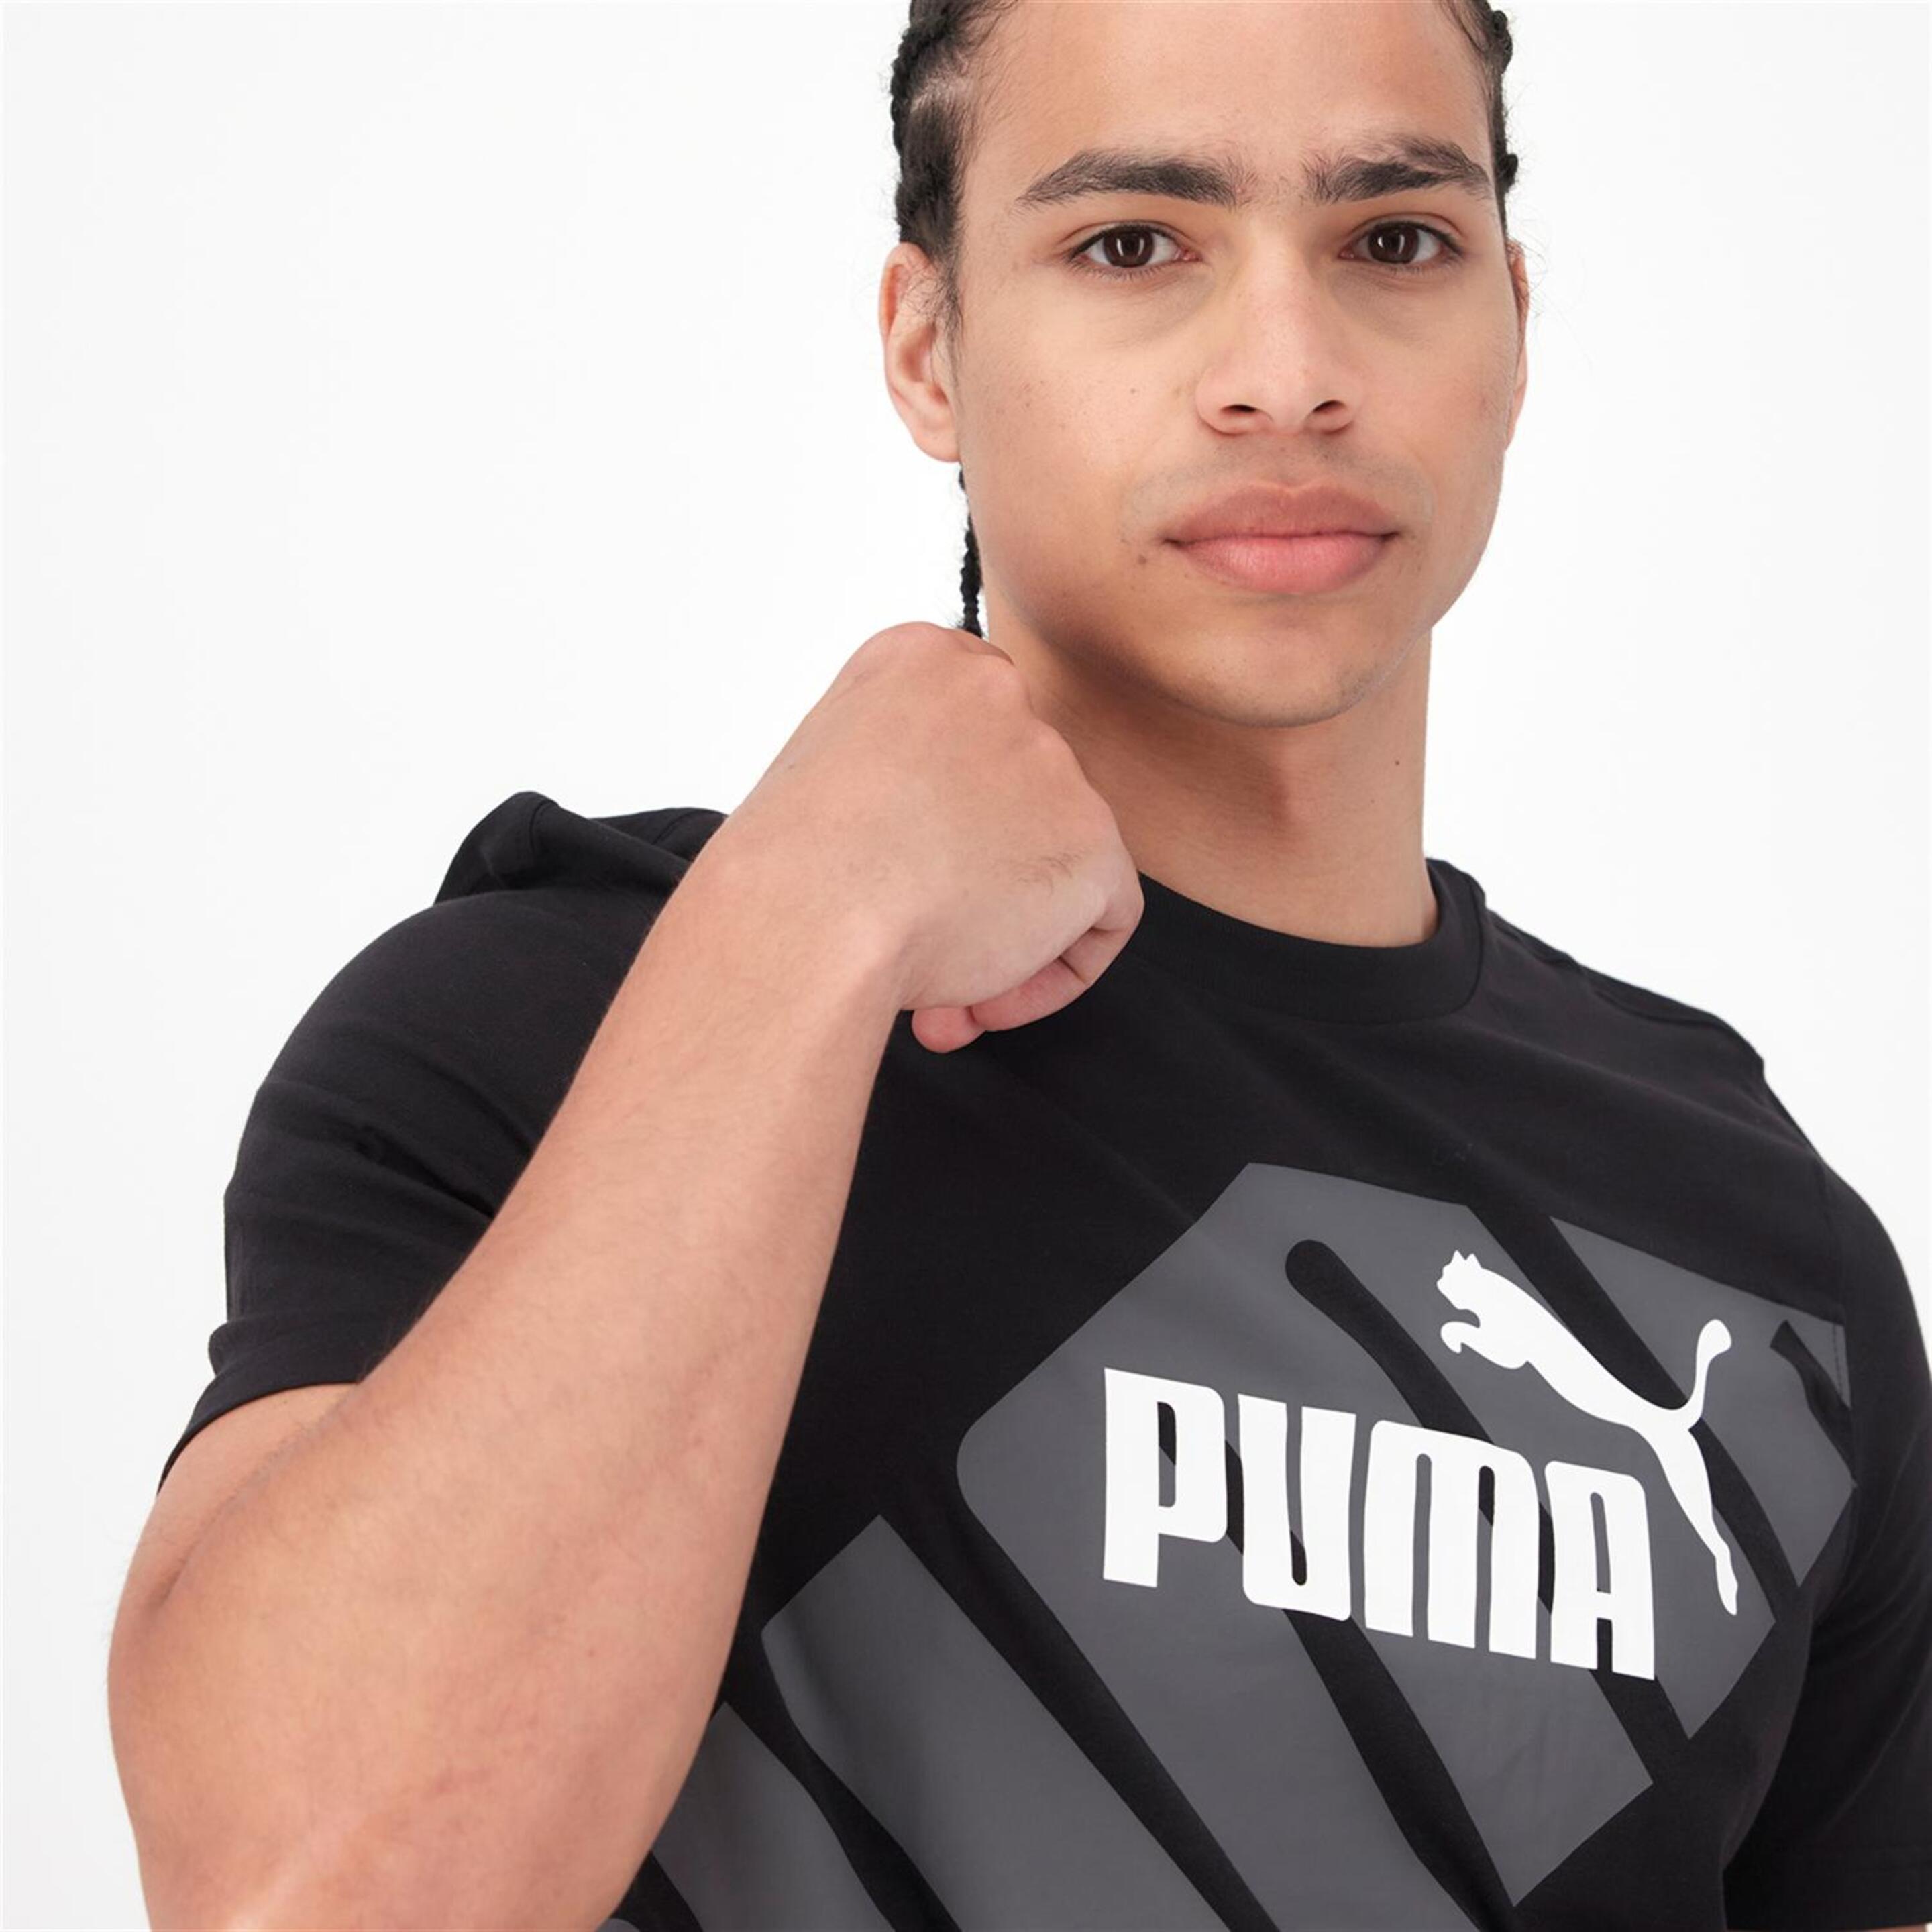 Puma Power - Negro - Camiseta Hombre